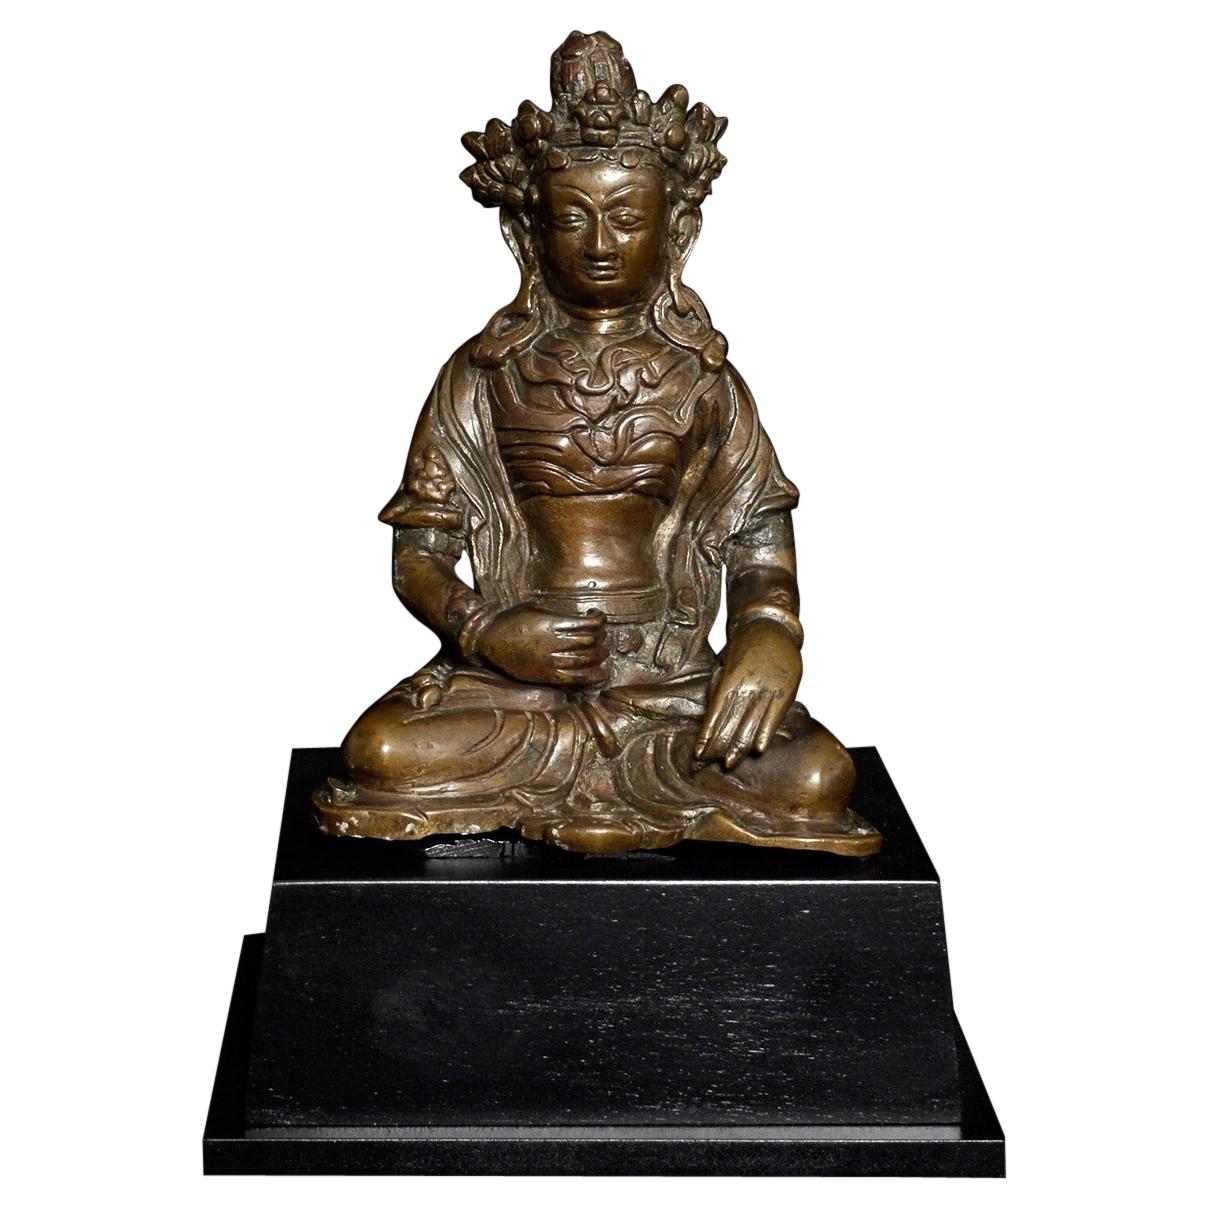 Bouddha tibétain du 18e siècle ou Bodhisattva. Rare et d'excellente - 9460